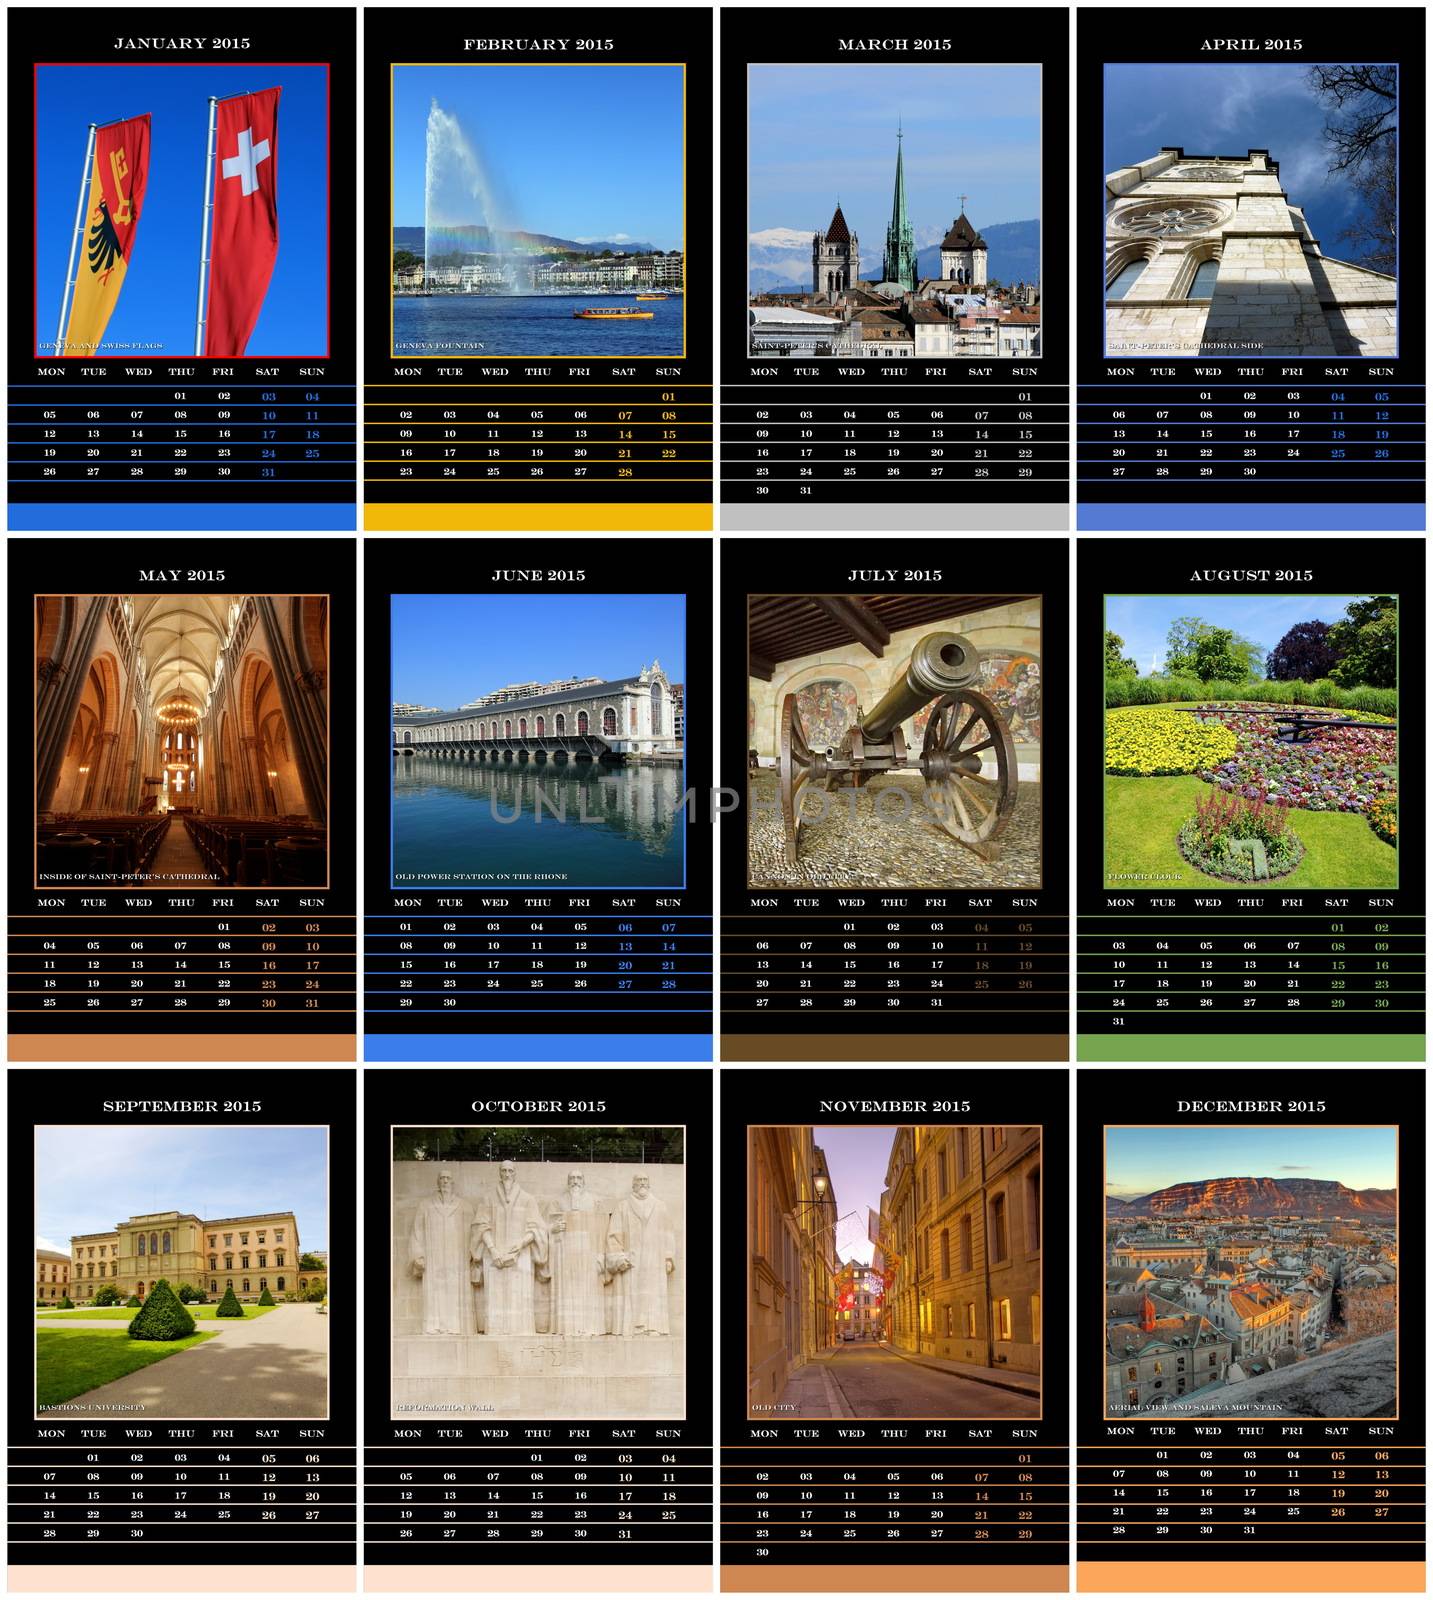 European 2015 year calendar for Geneva, Switzerland by Elenaphotos21